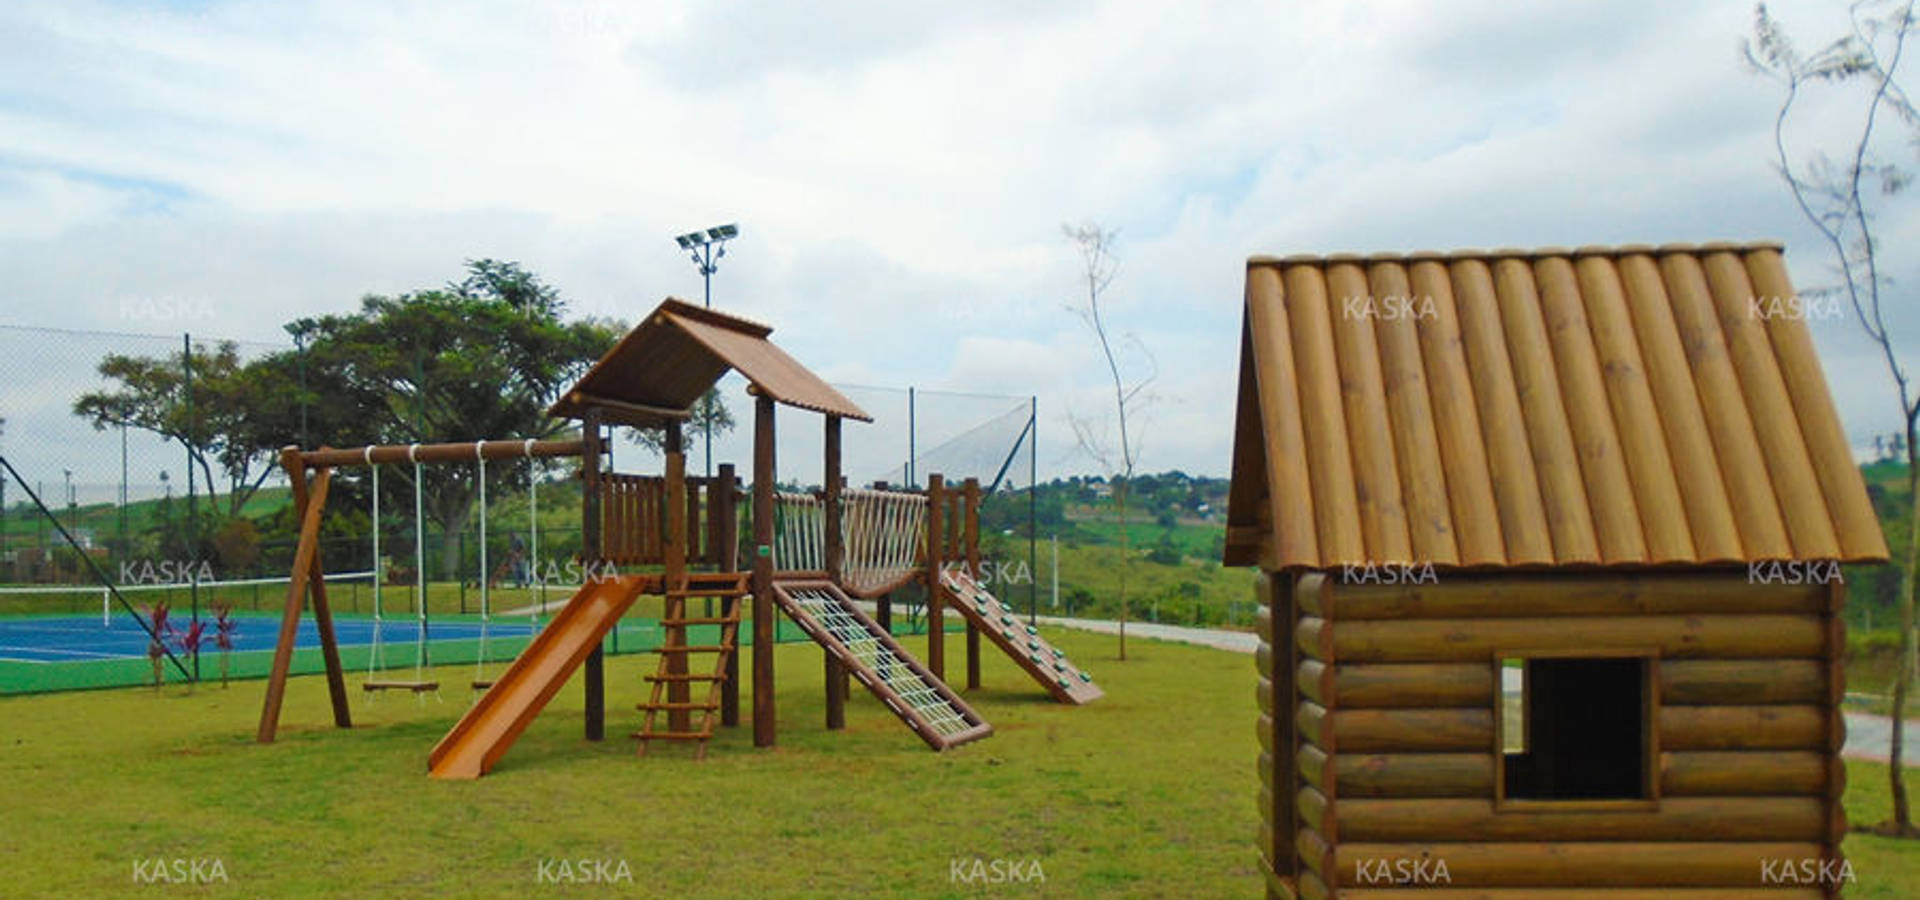 Kaska Playgrounds